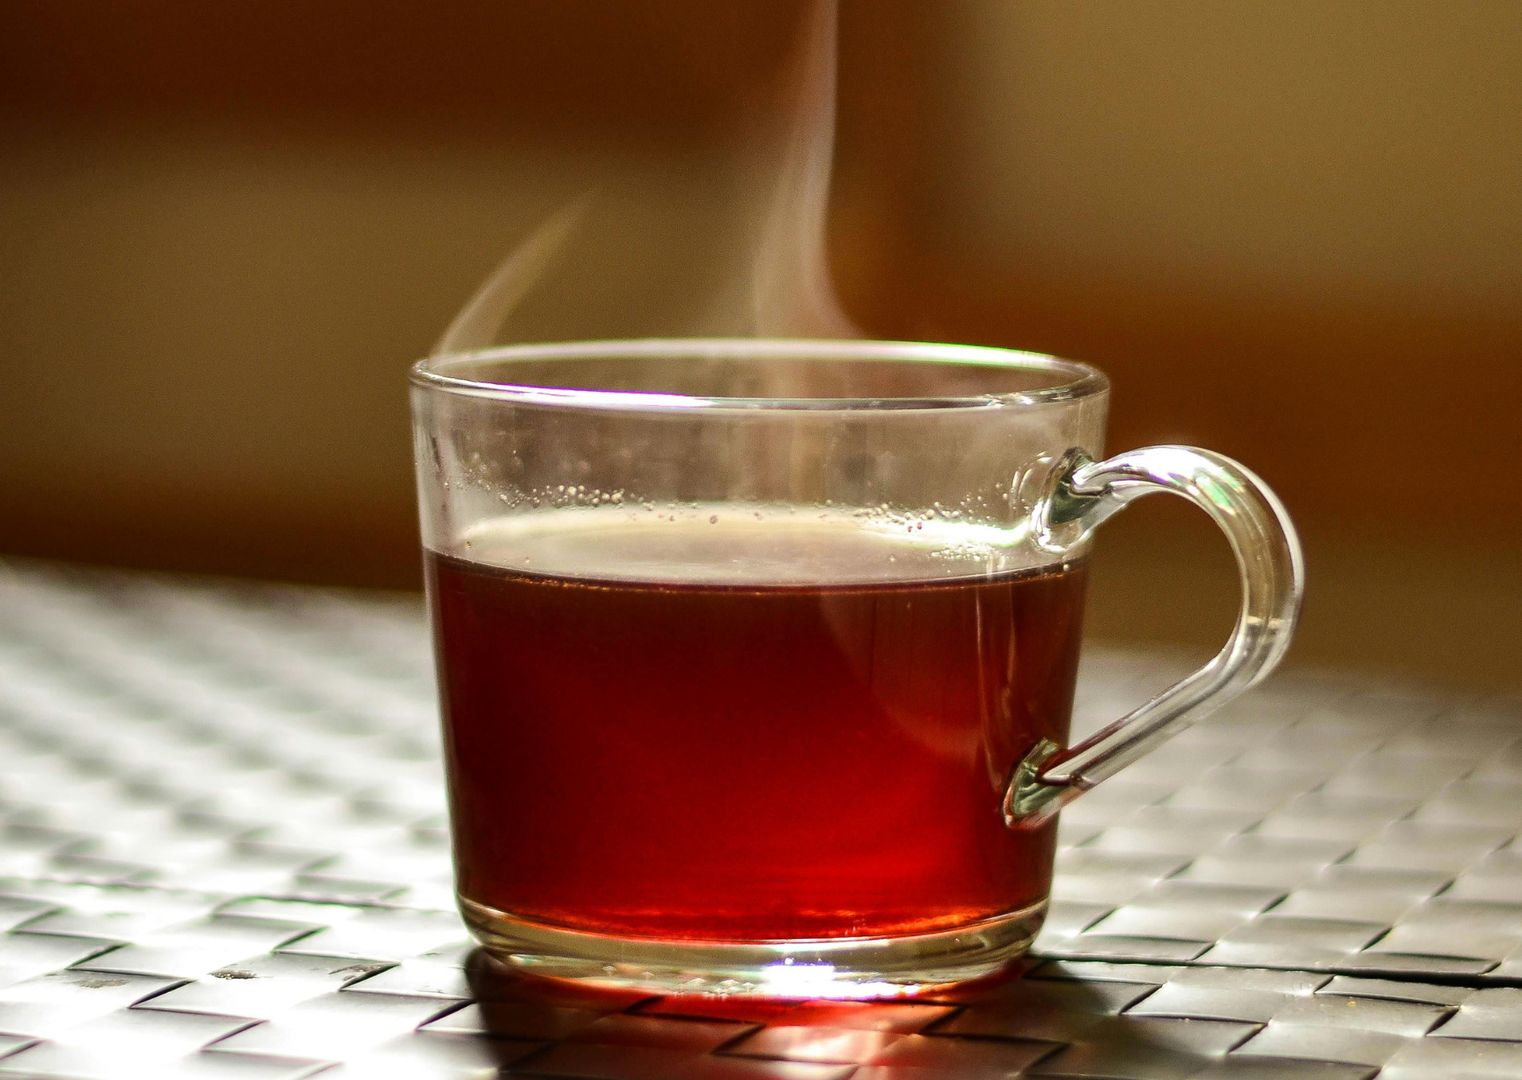 Trująca herbata w woreczkach? Ekspert komentuje wynik badania